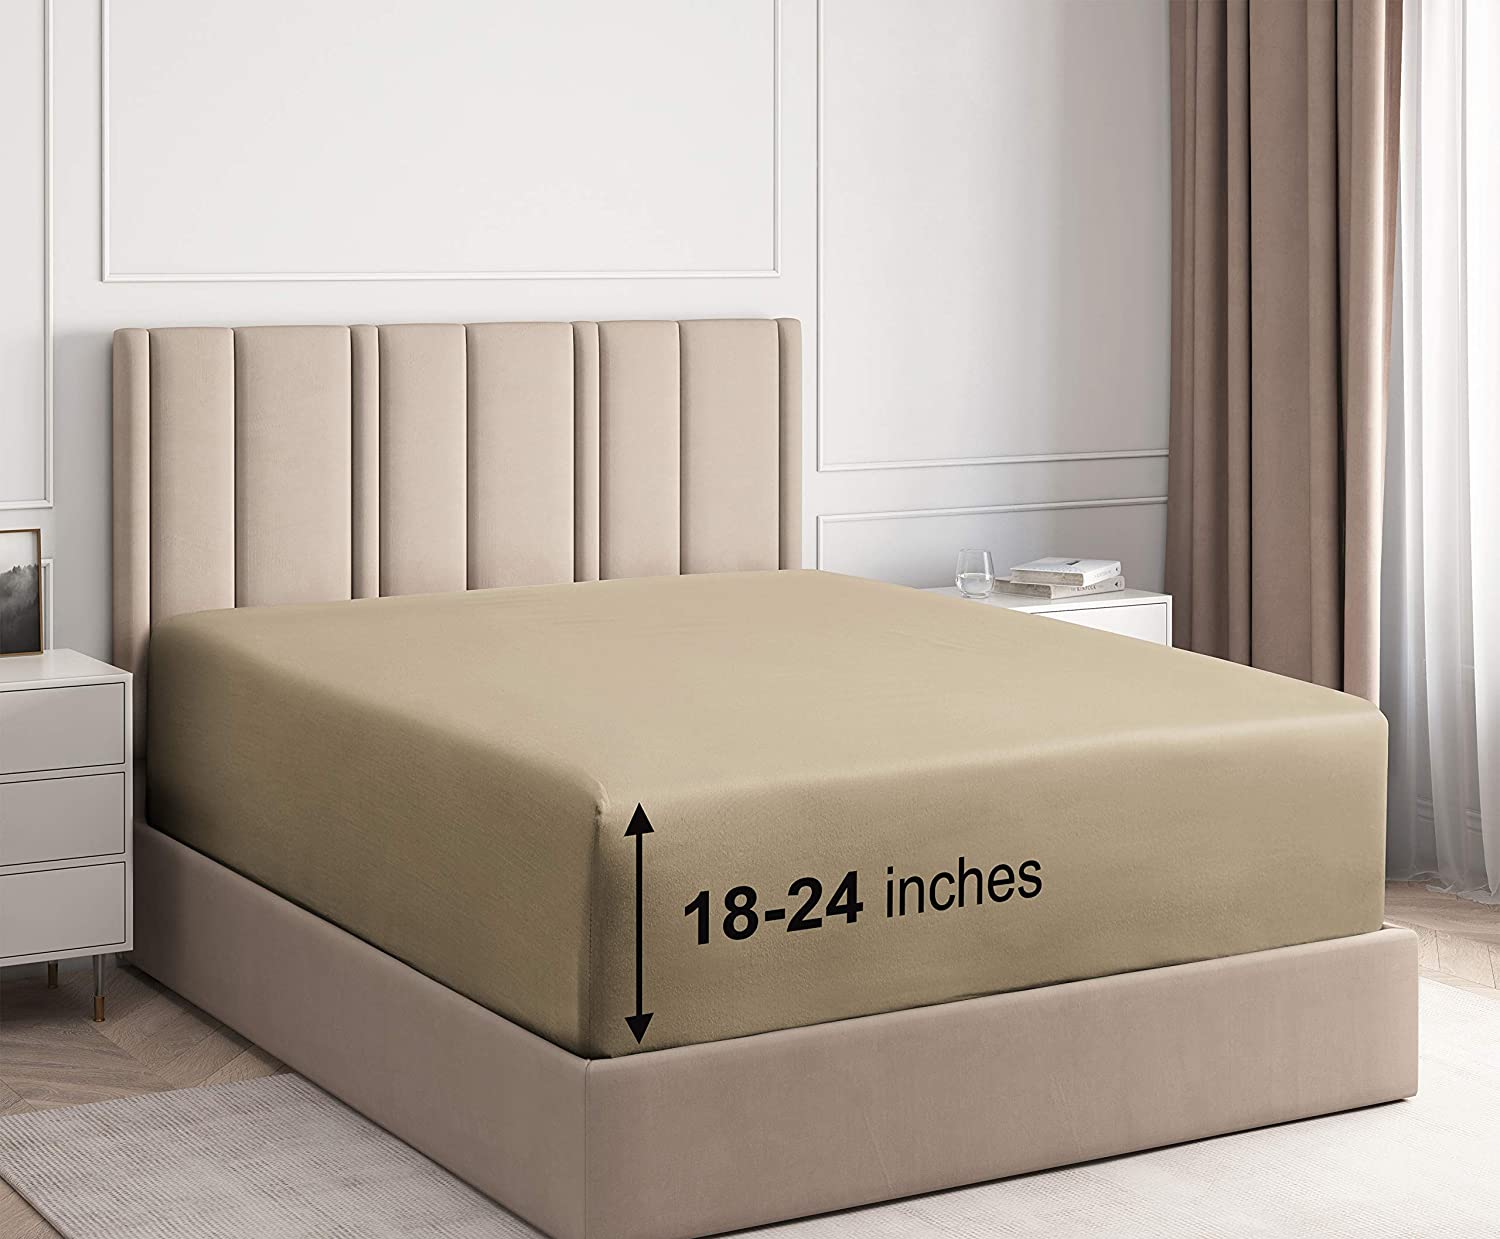 sheets for soundasleep air mattress